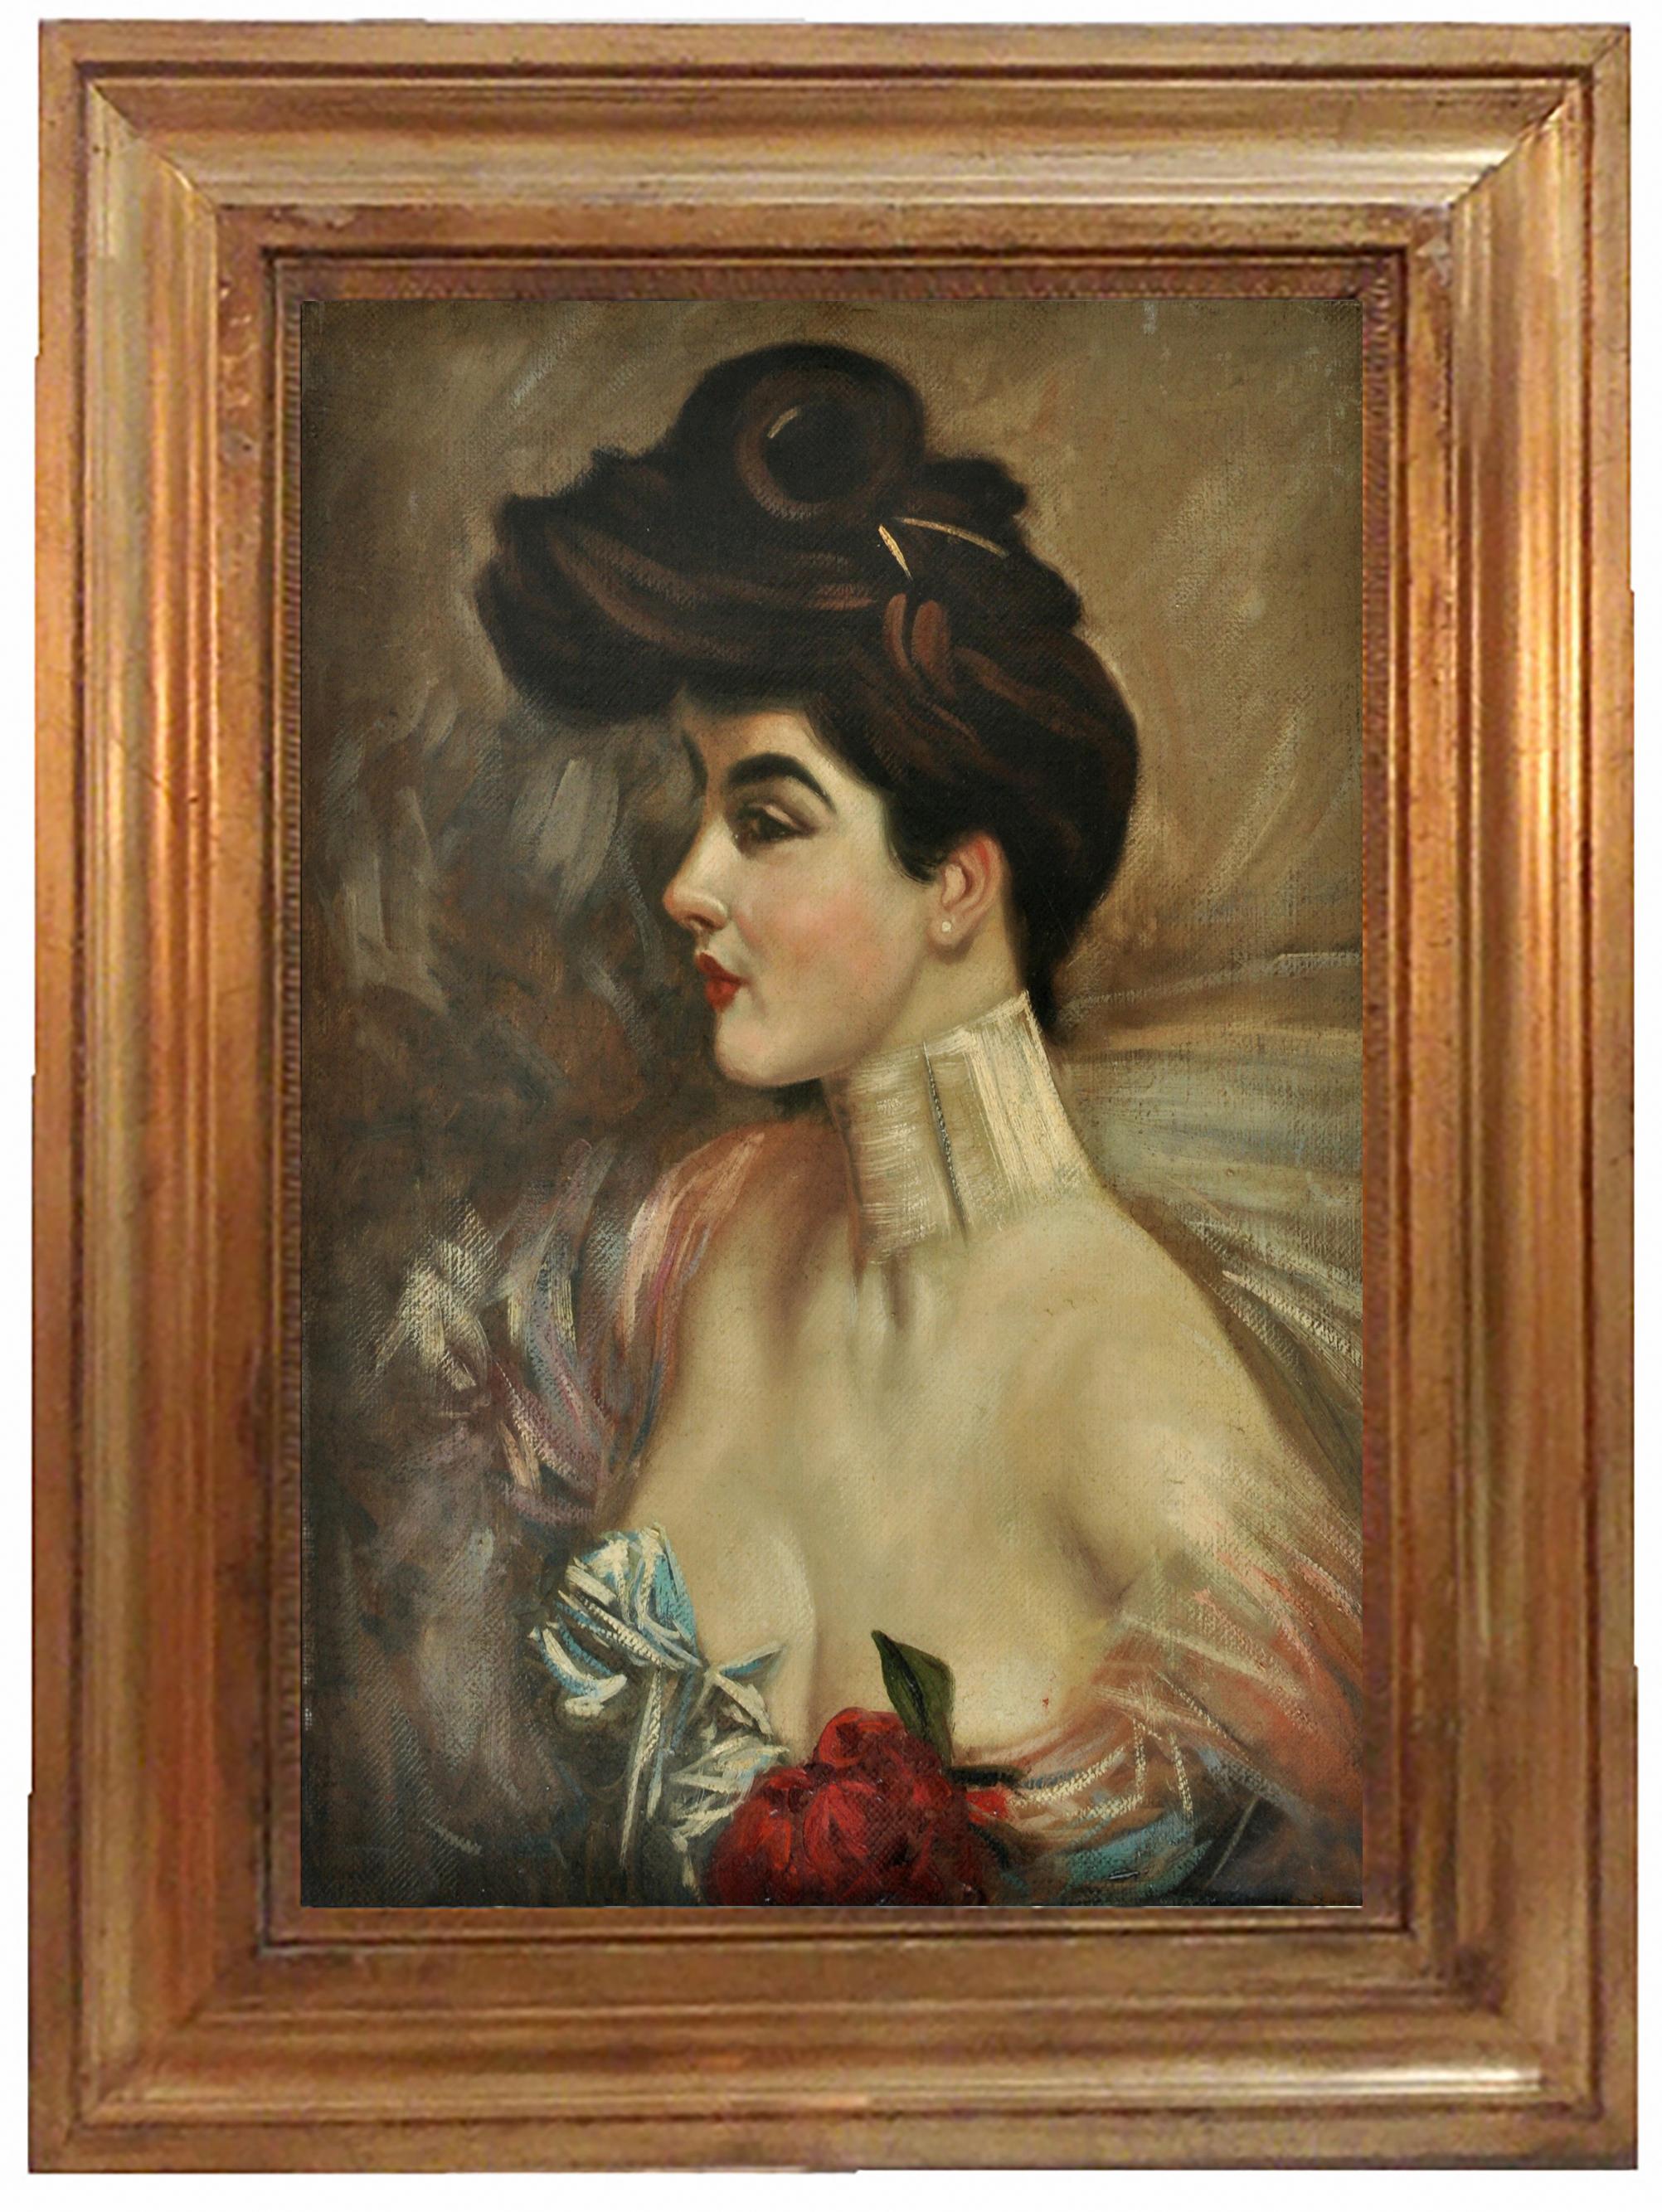 Portrait Painting Ciro De Rosa - LADY'S PORTRAIT - À la manière de G. Boldini - Peinture à l'huile sur toile italienne